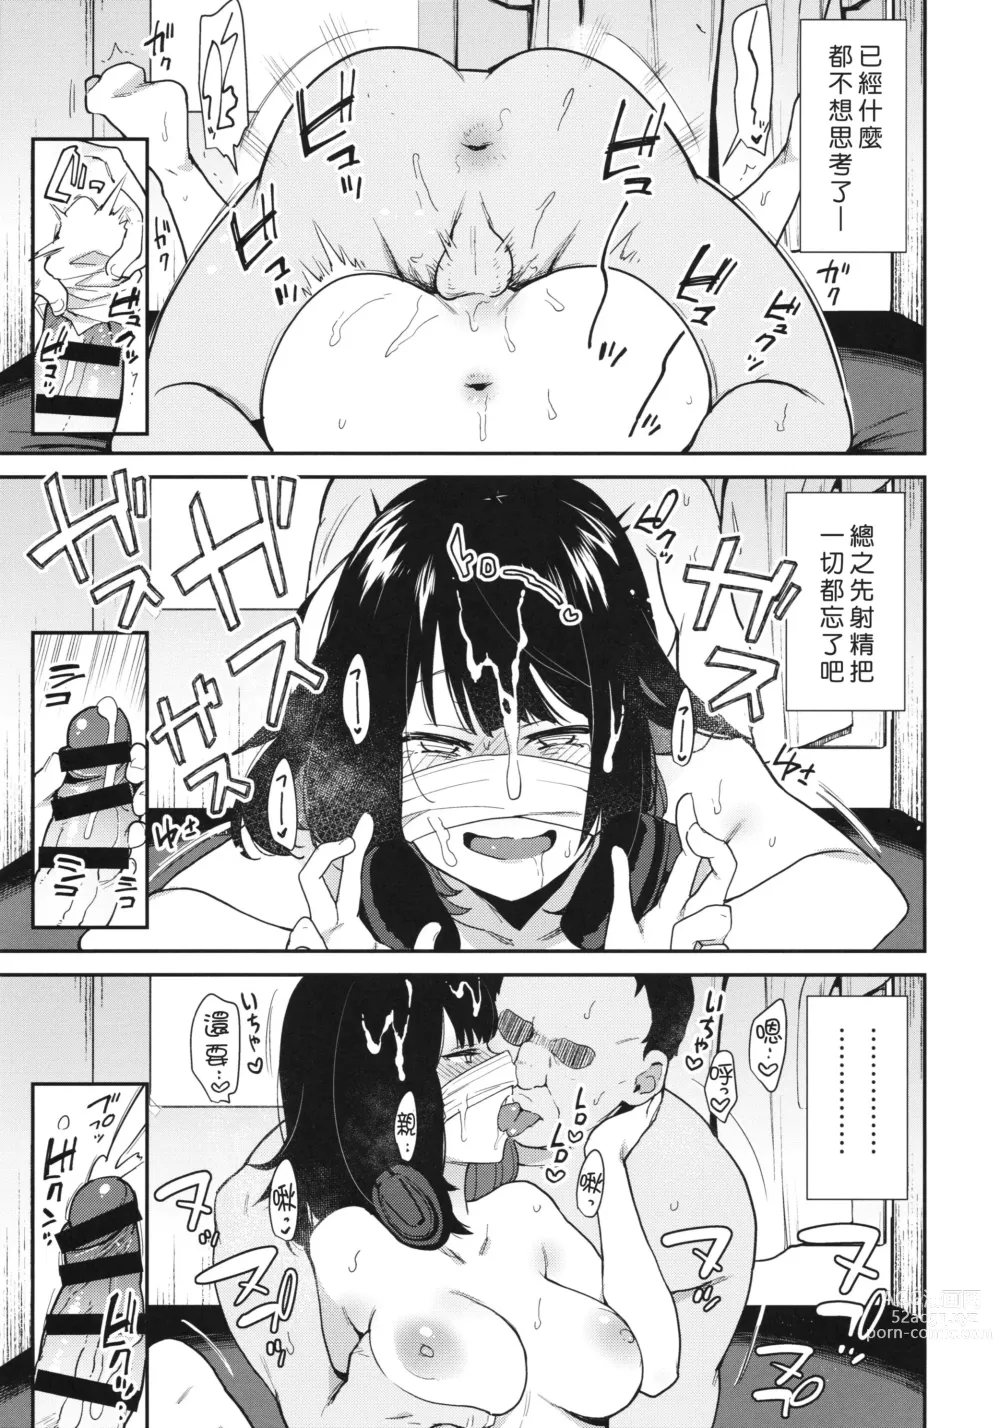 Page 26 of doujinshi Chouko I-V